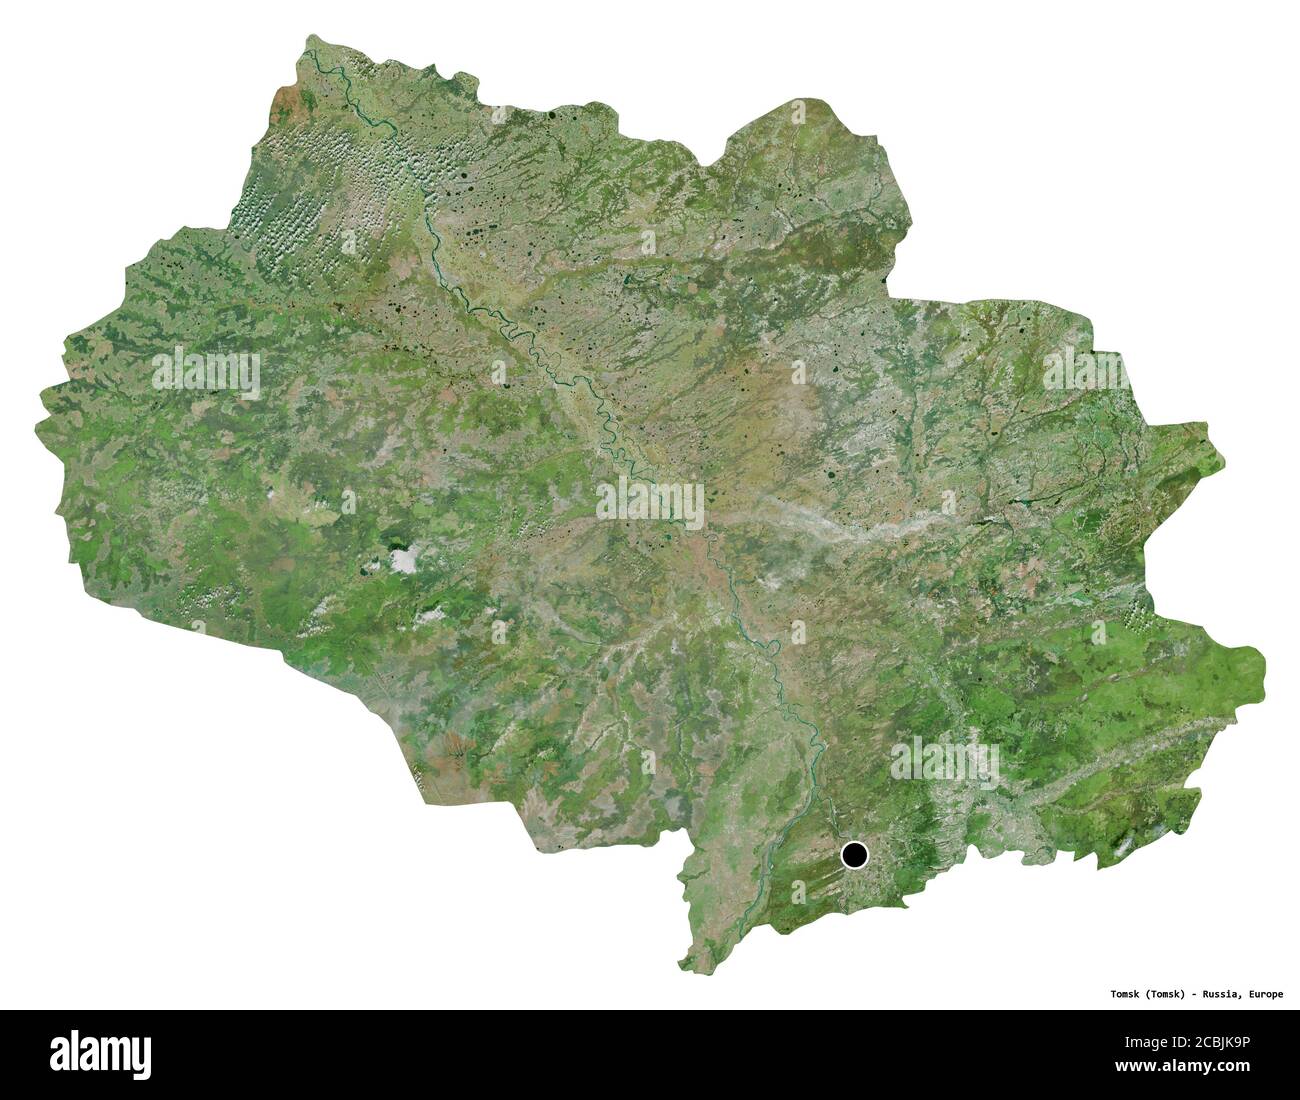 Forme de Tomsk, région de Russie, avec sa capitale isolée sur fond blanc. Imagerie satellite. Rendu 3D Banque D'Images